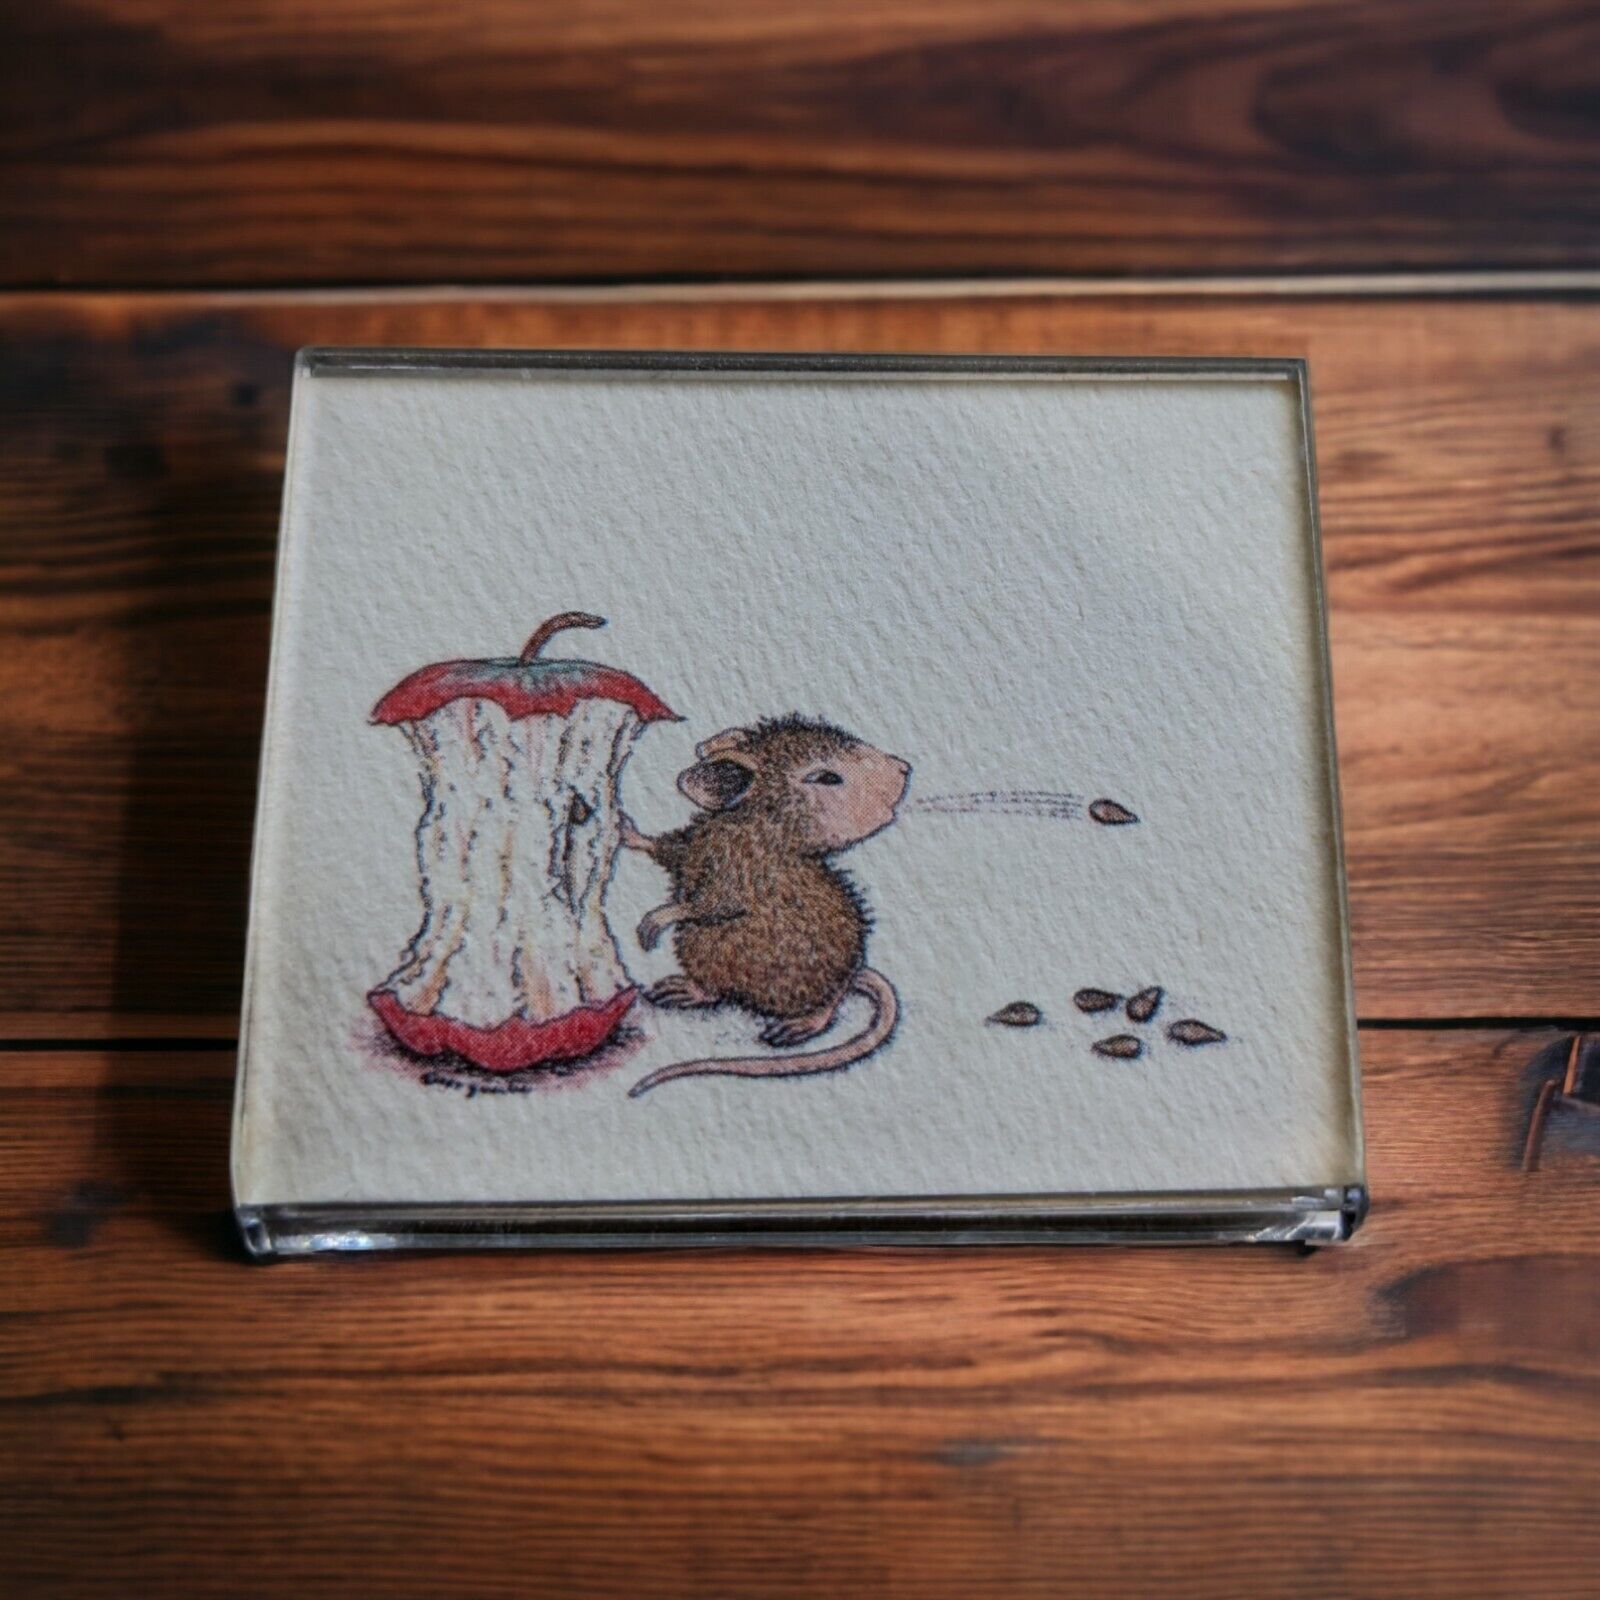 Vintage Ellen Jareckie Mouse Spitting Out Apple Seeds Magnet House Mouse 1987